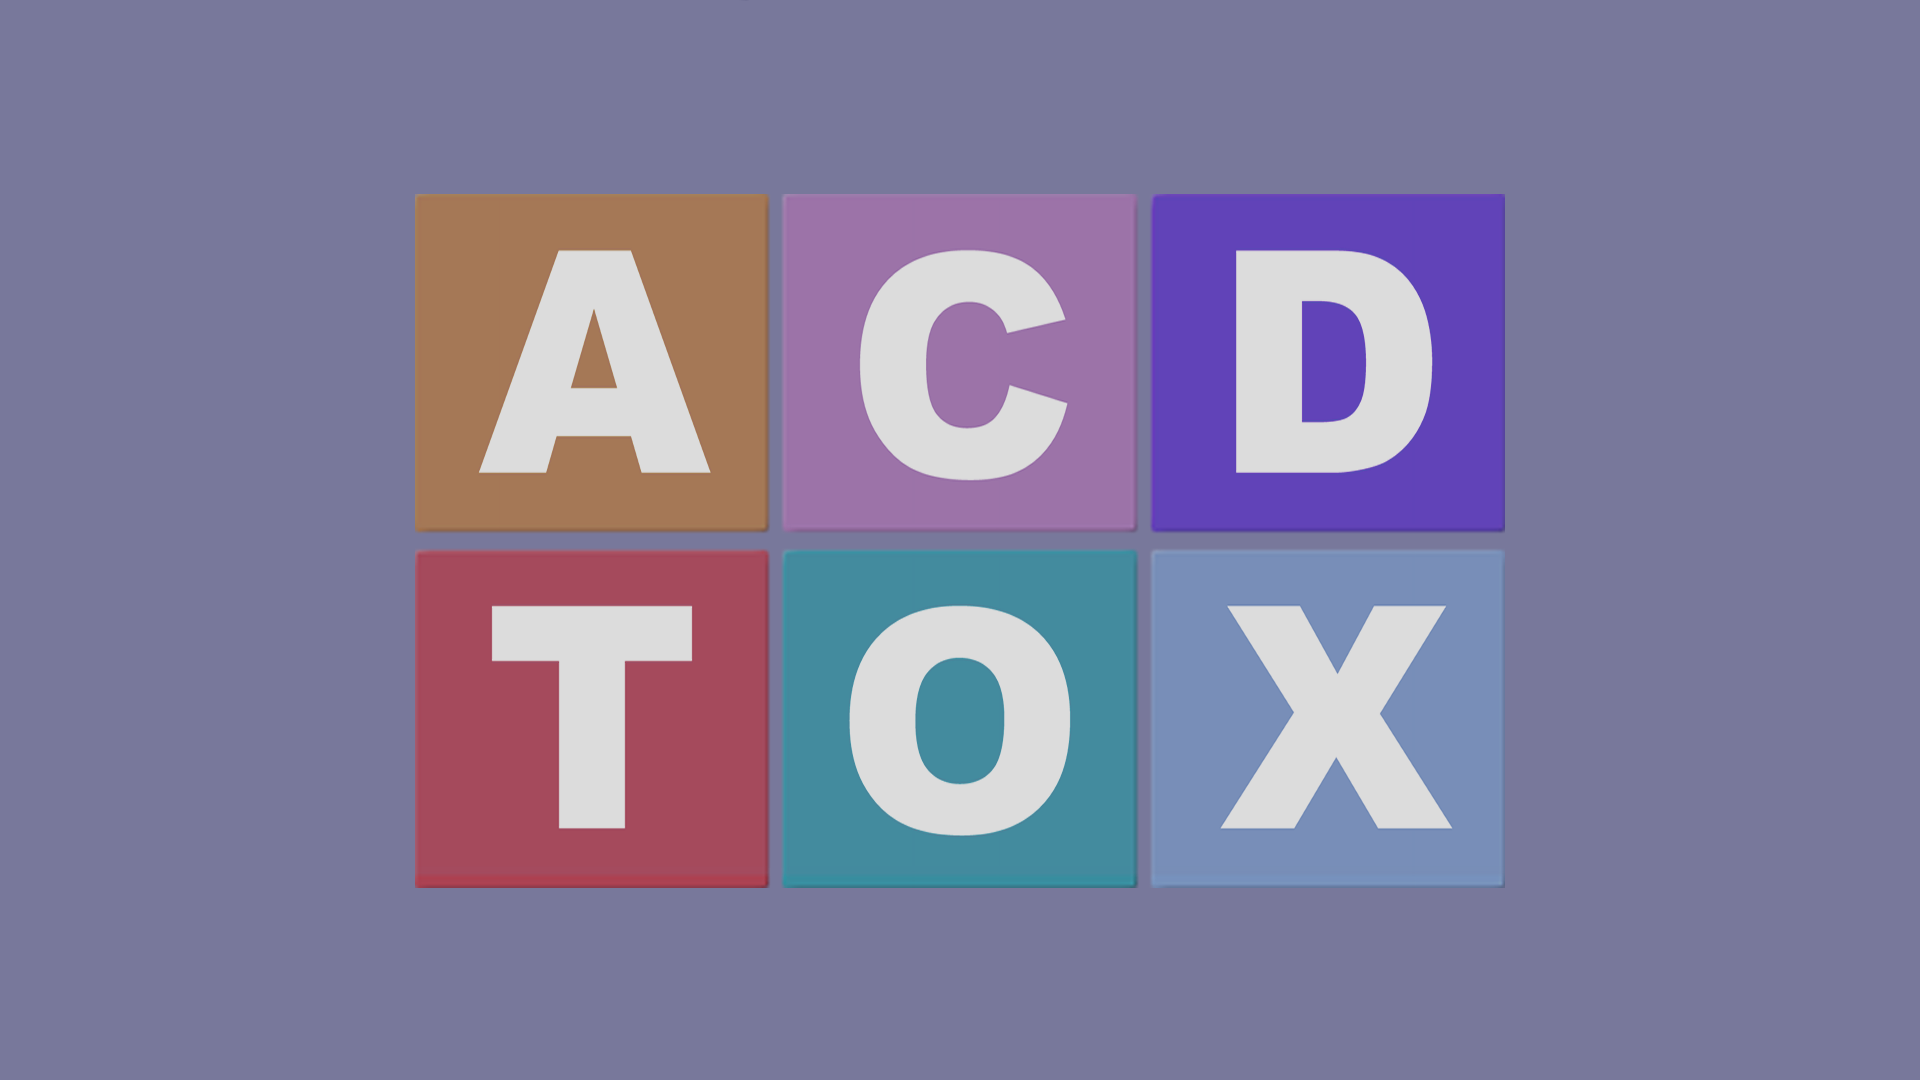 acdtox